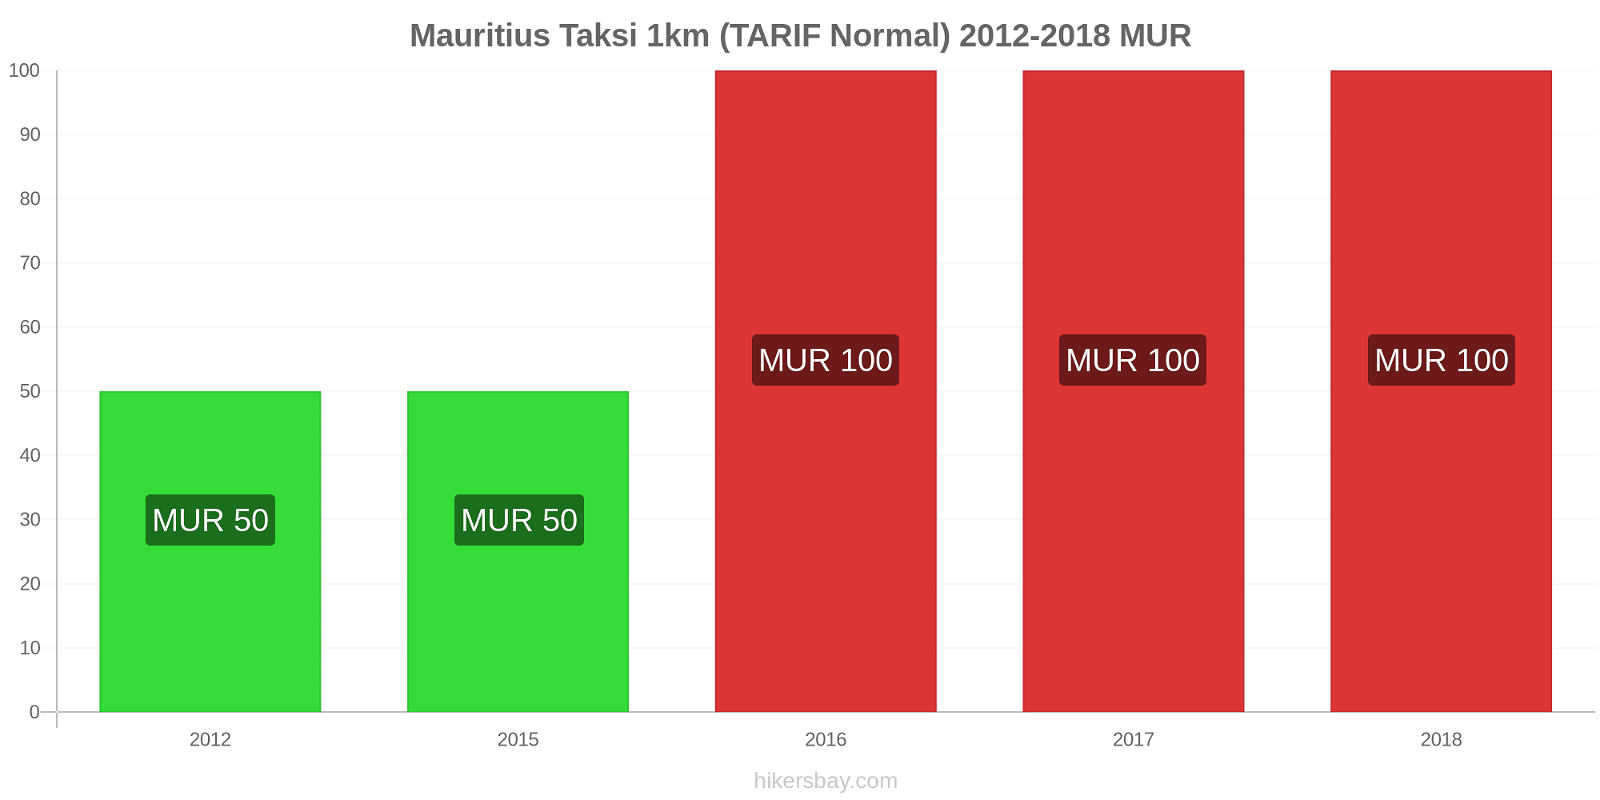 Mauritius perubahan harga Taksi 1km (Tarif Normal) hikersbay.com